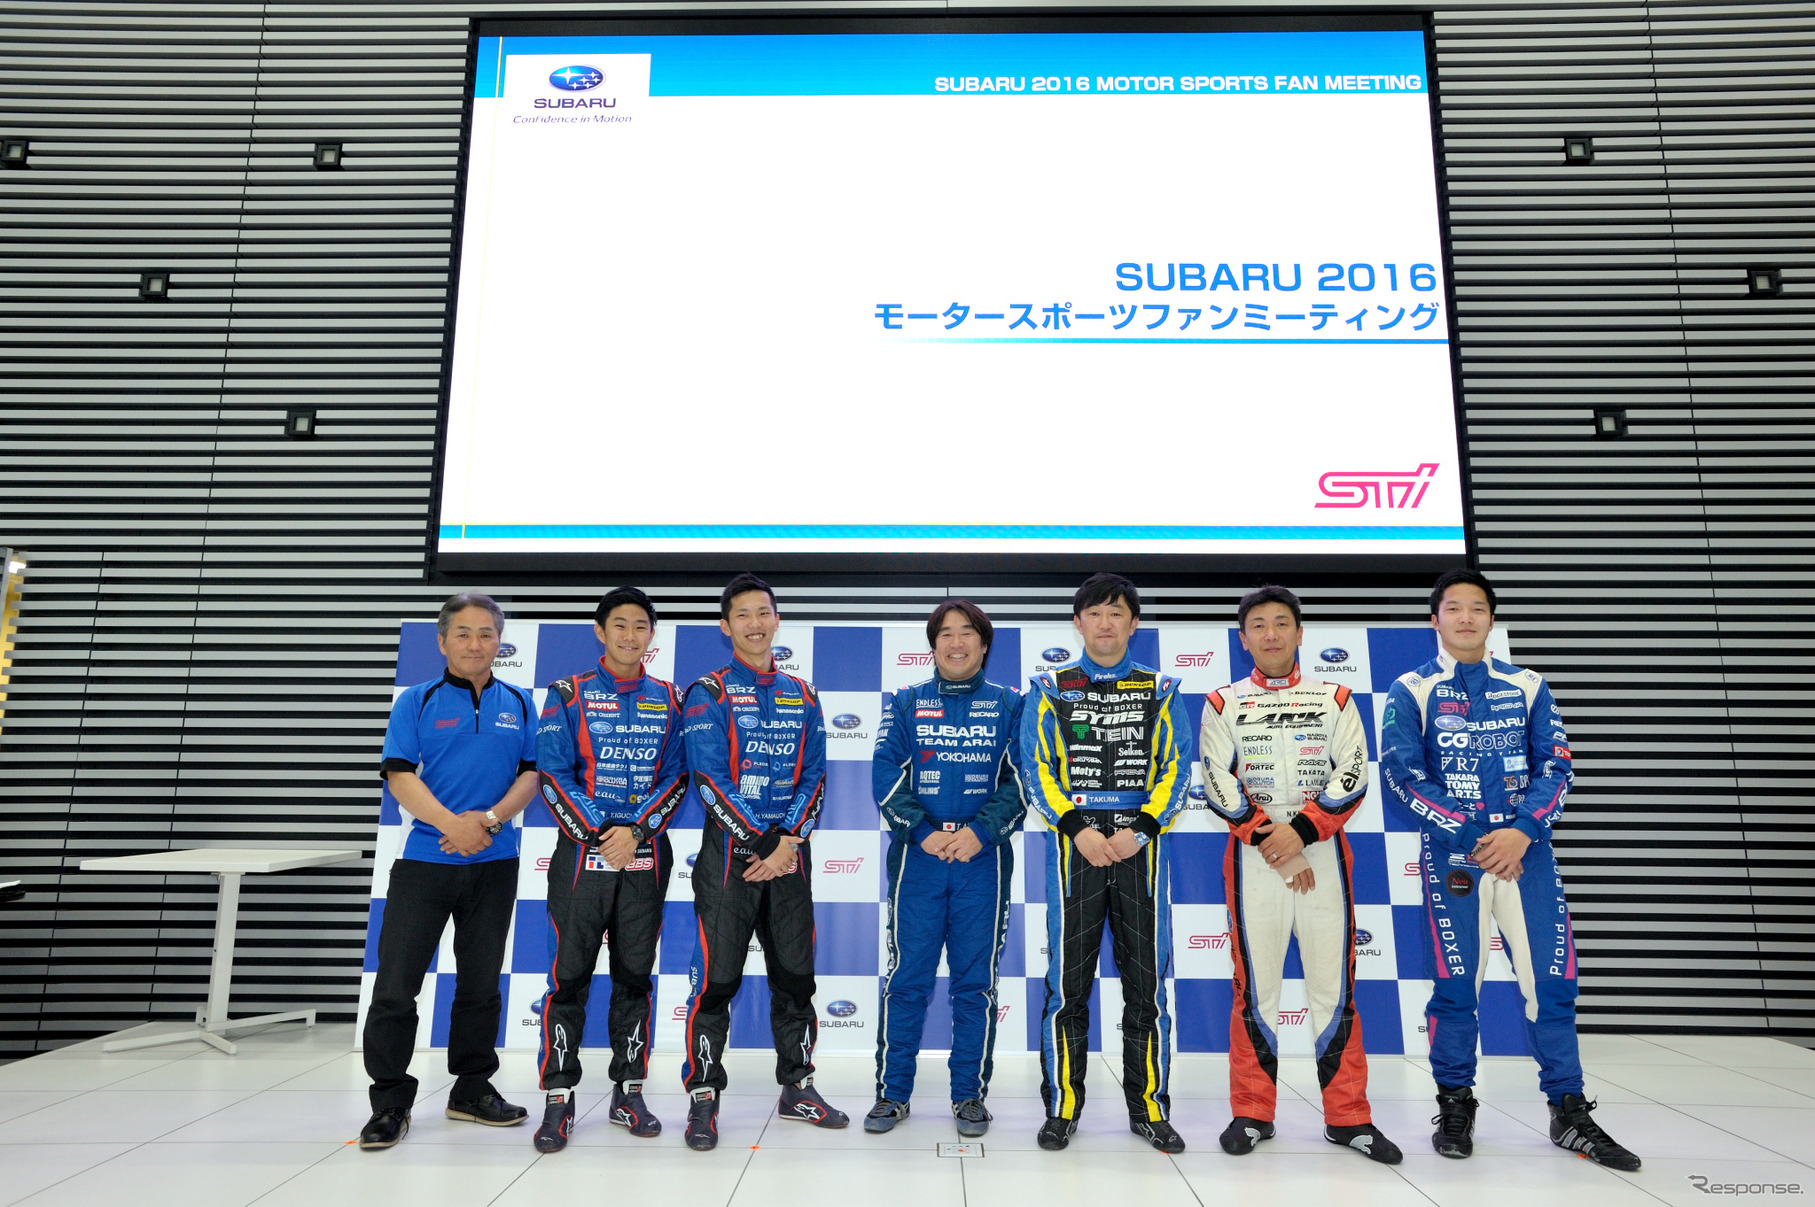 SUBARU 2016モータースポーツファンミーティング